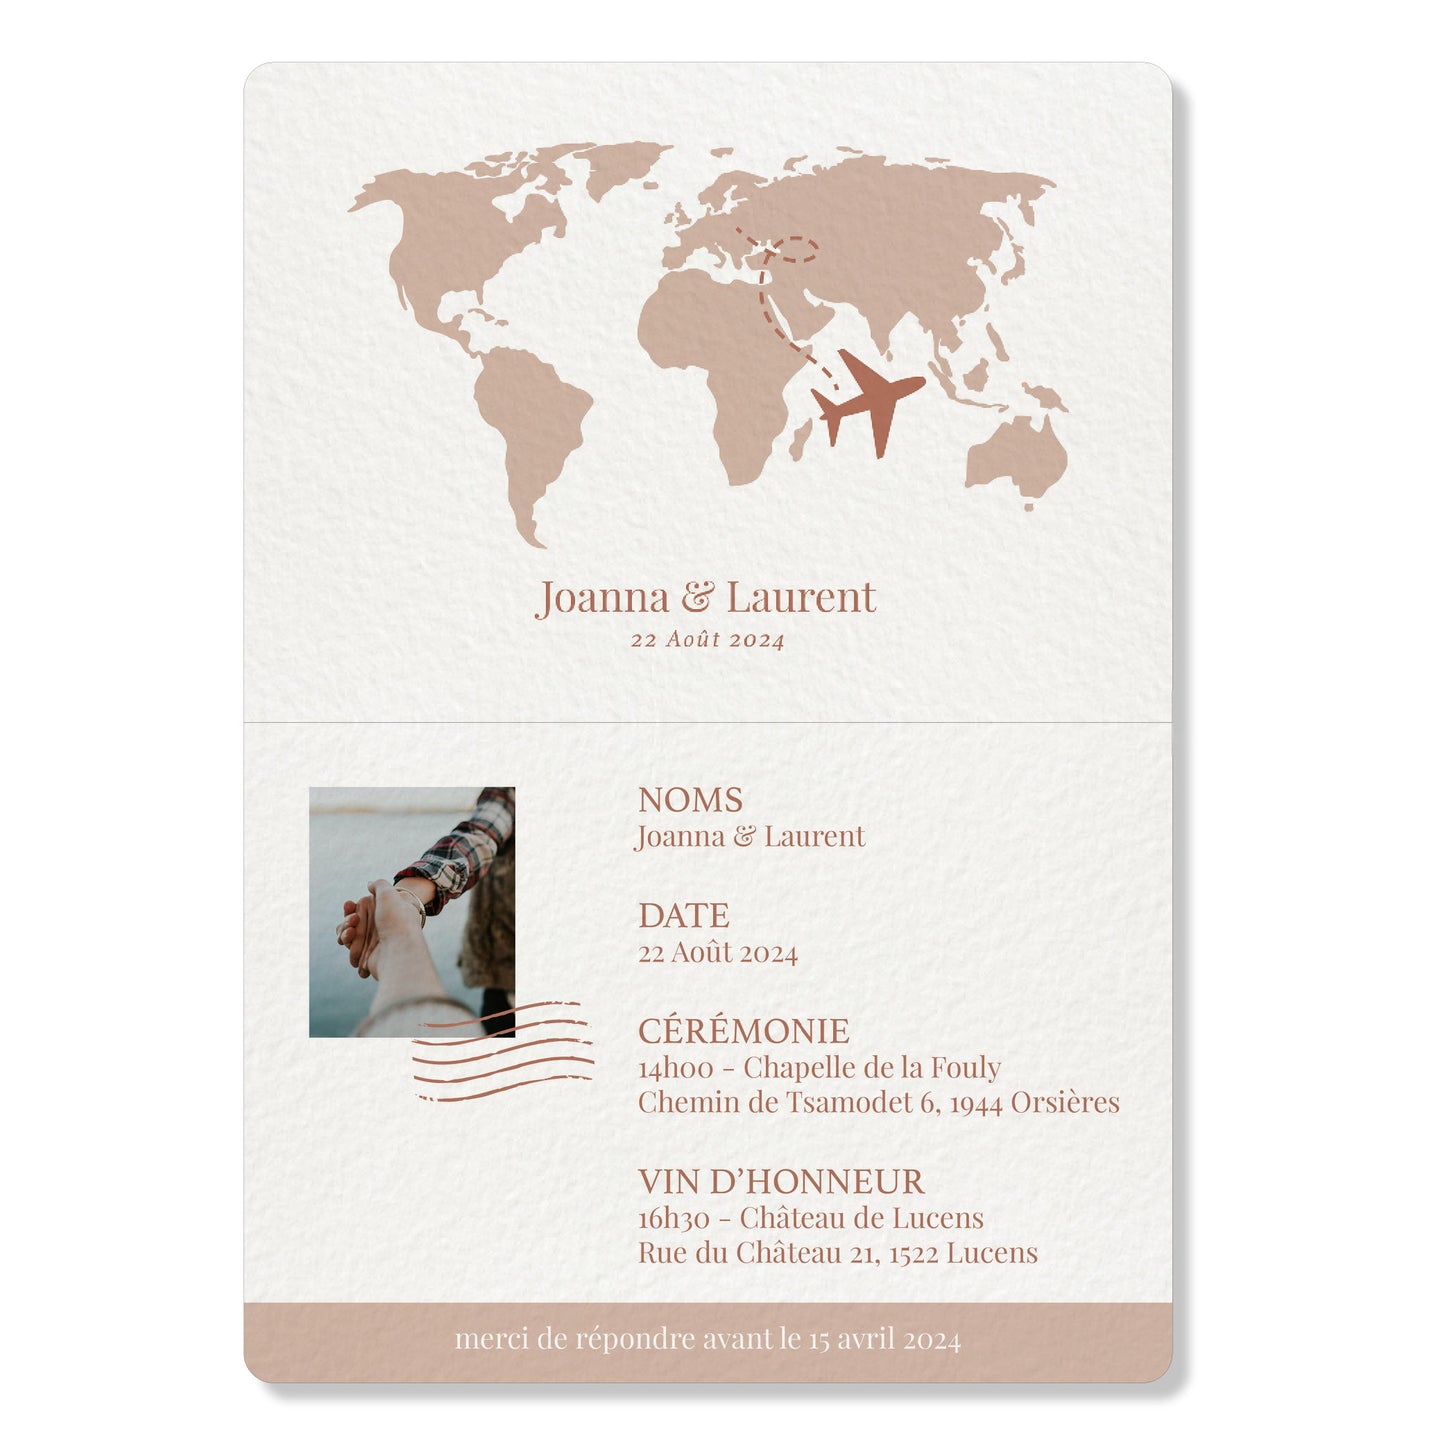 PACK faire-part passport + carton billet d'avion, rose pâle